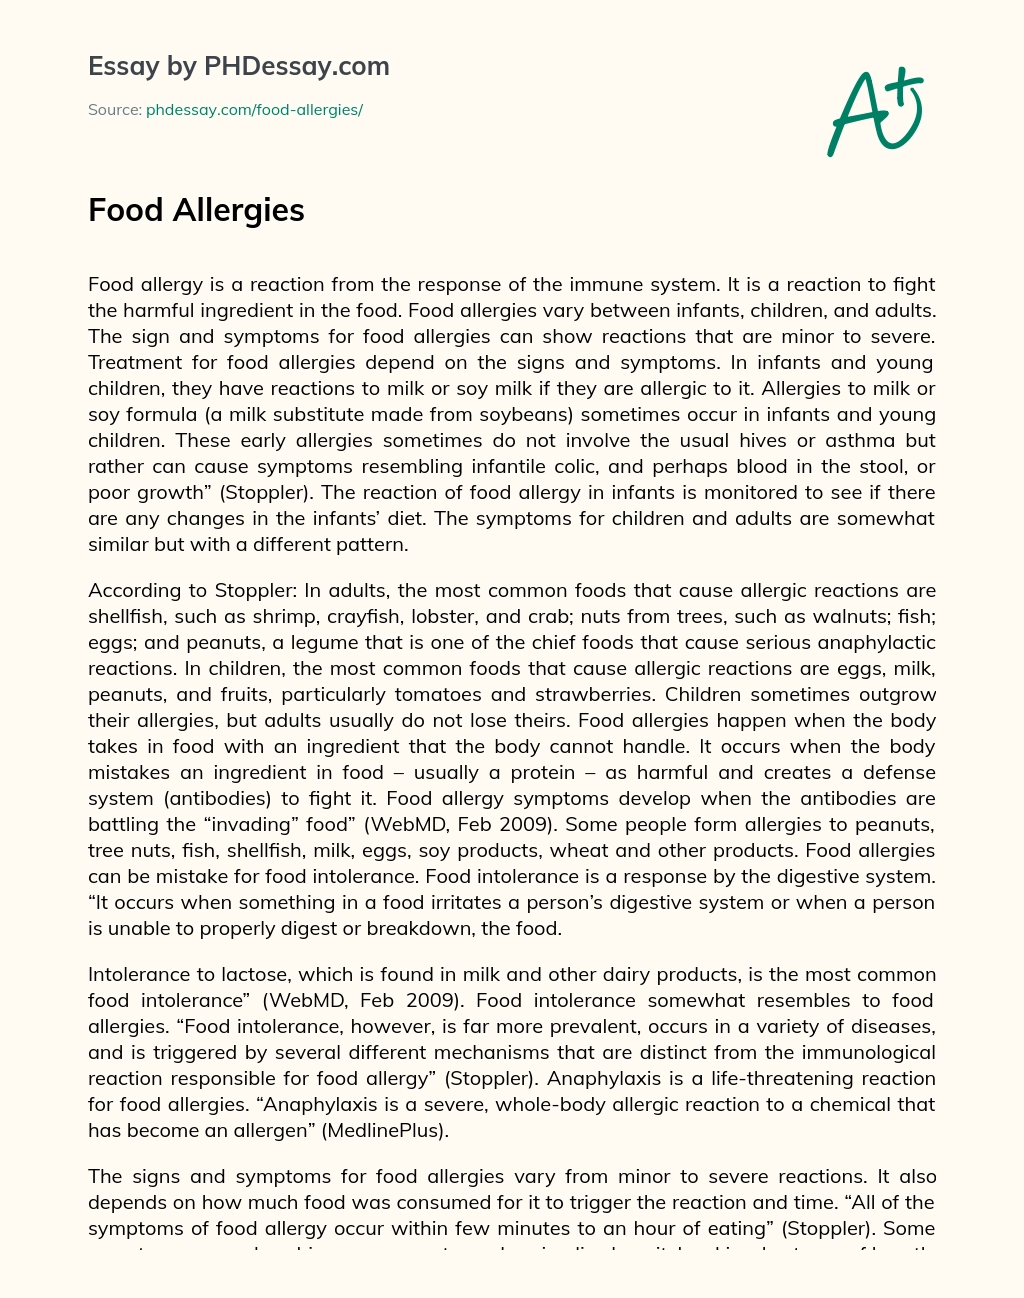 Food Allergies essay